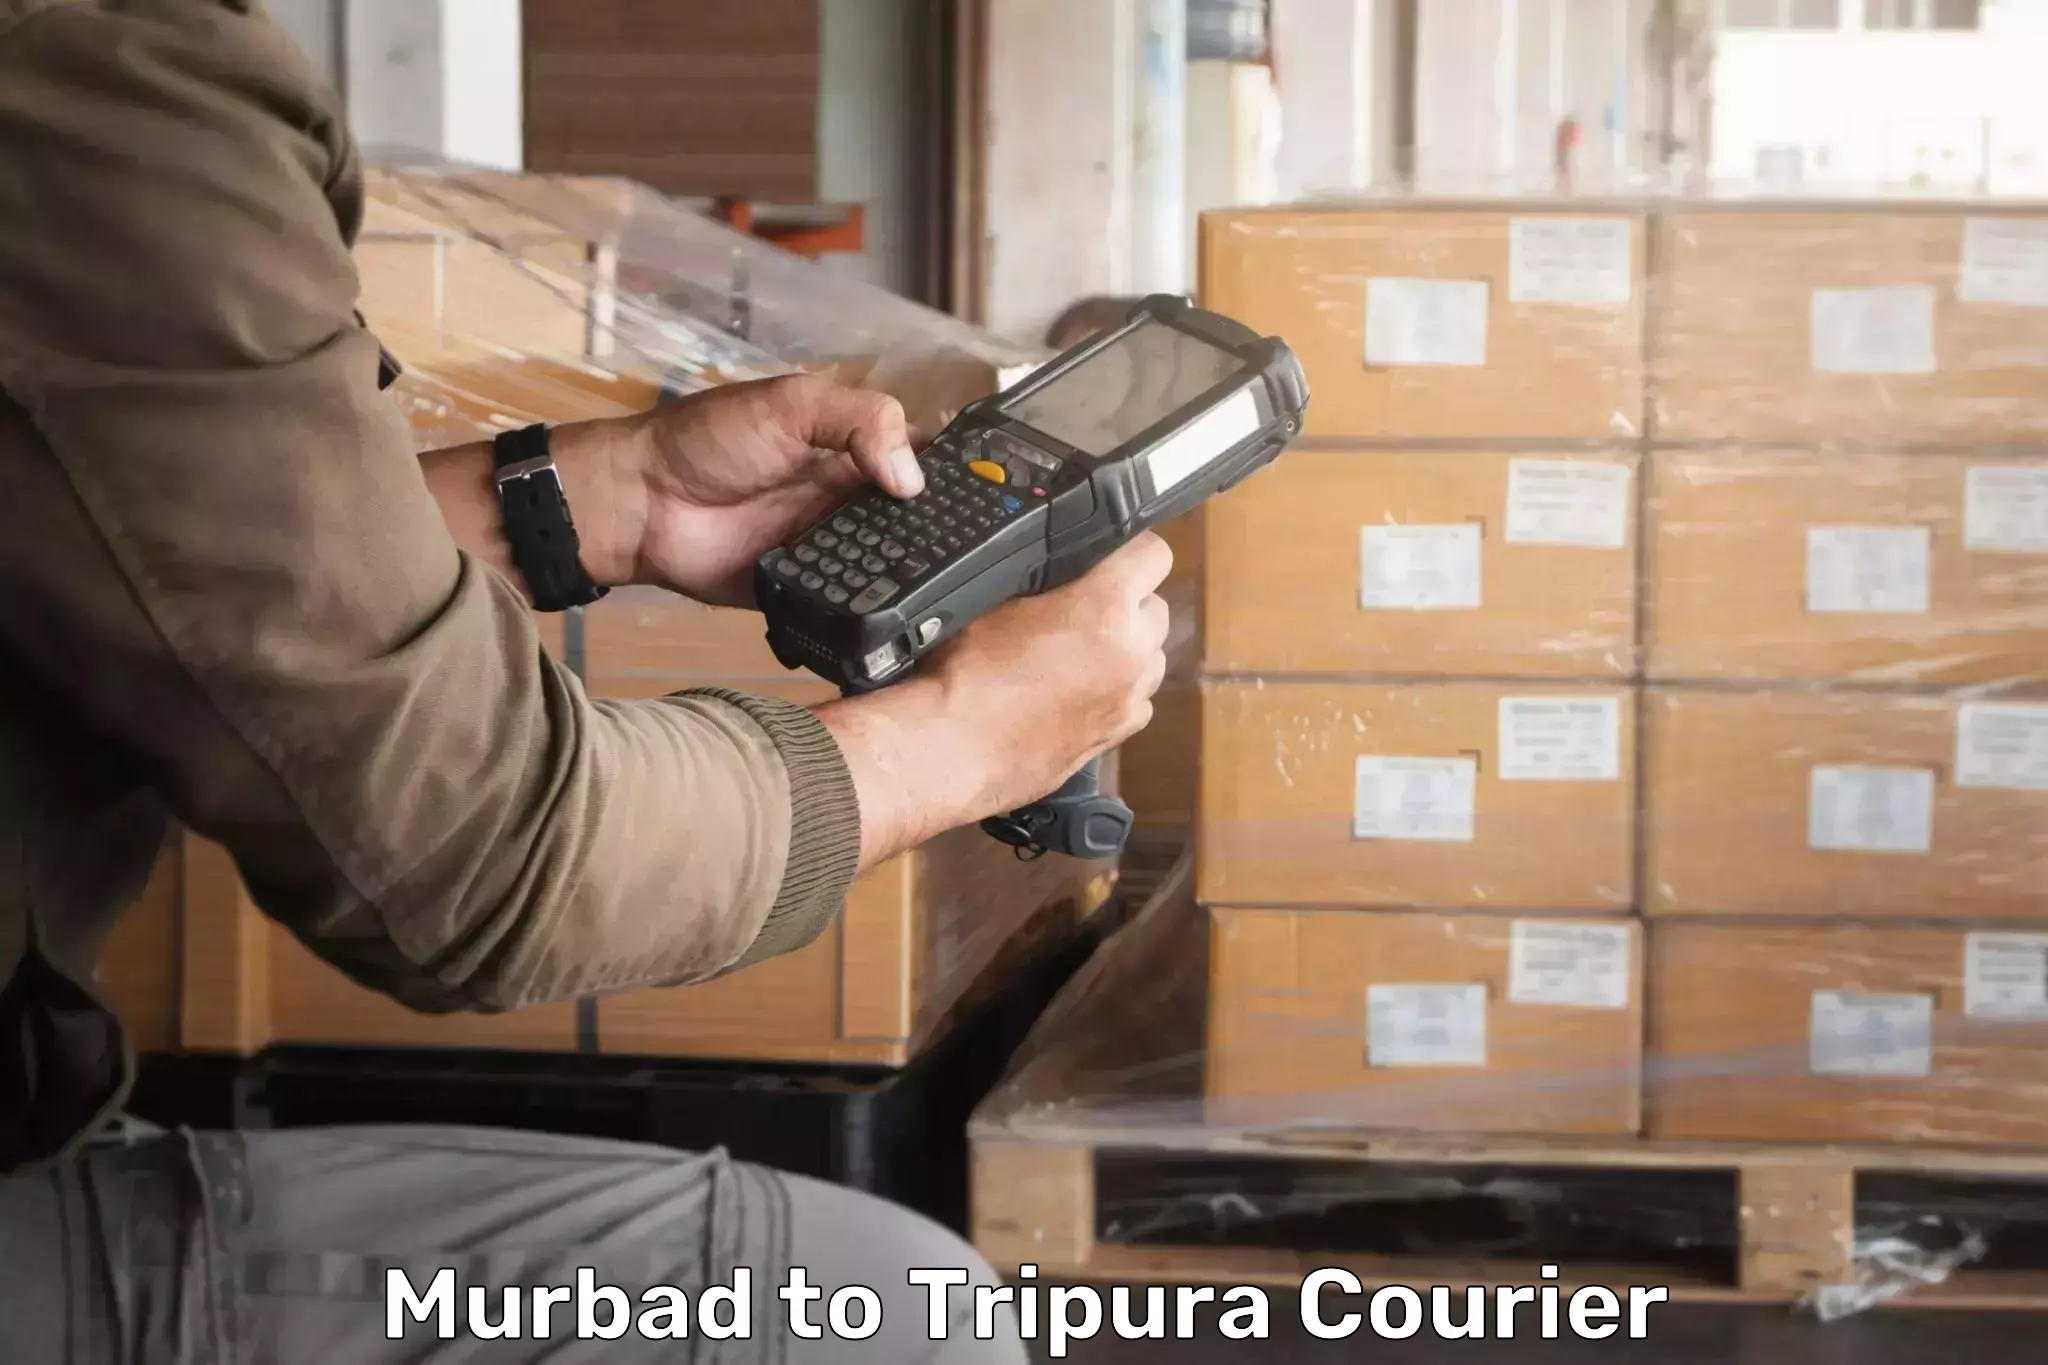 Courier service comparison Murbad to North Tripura